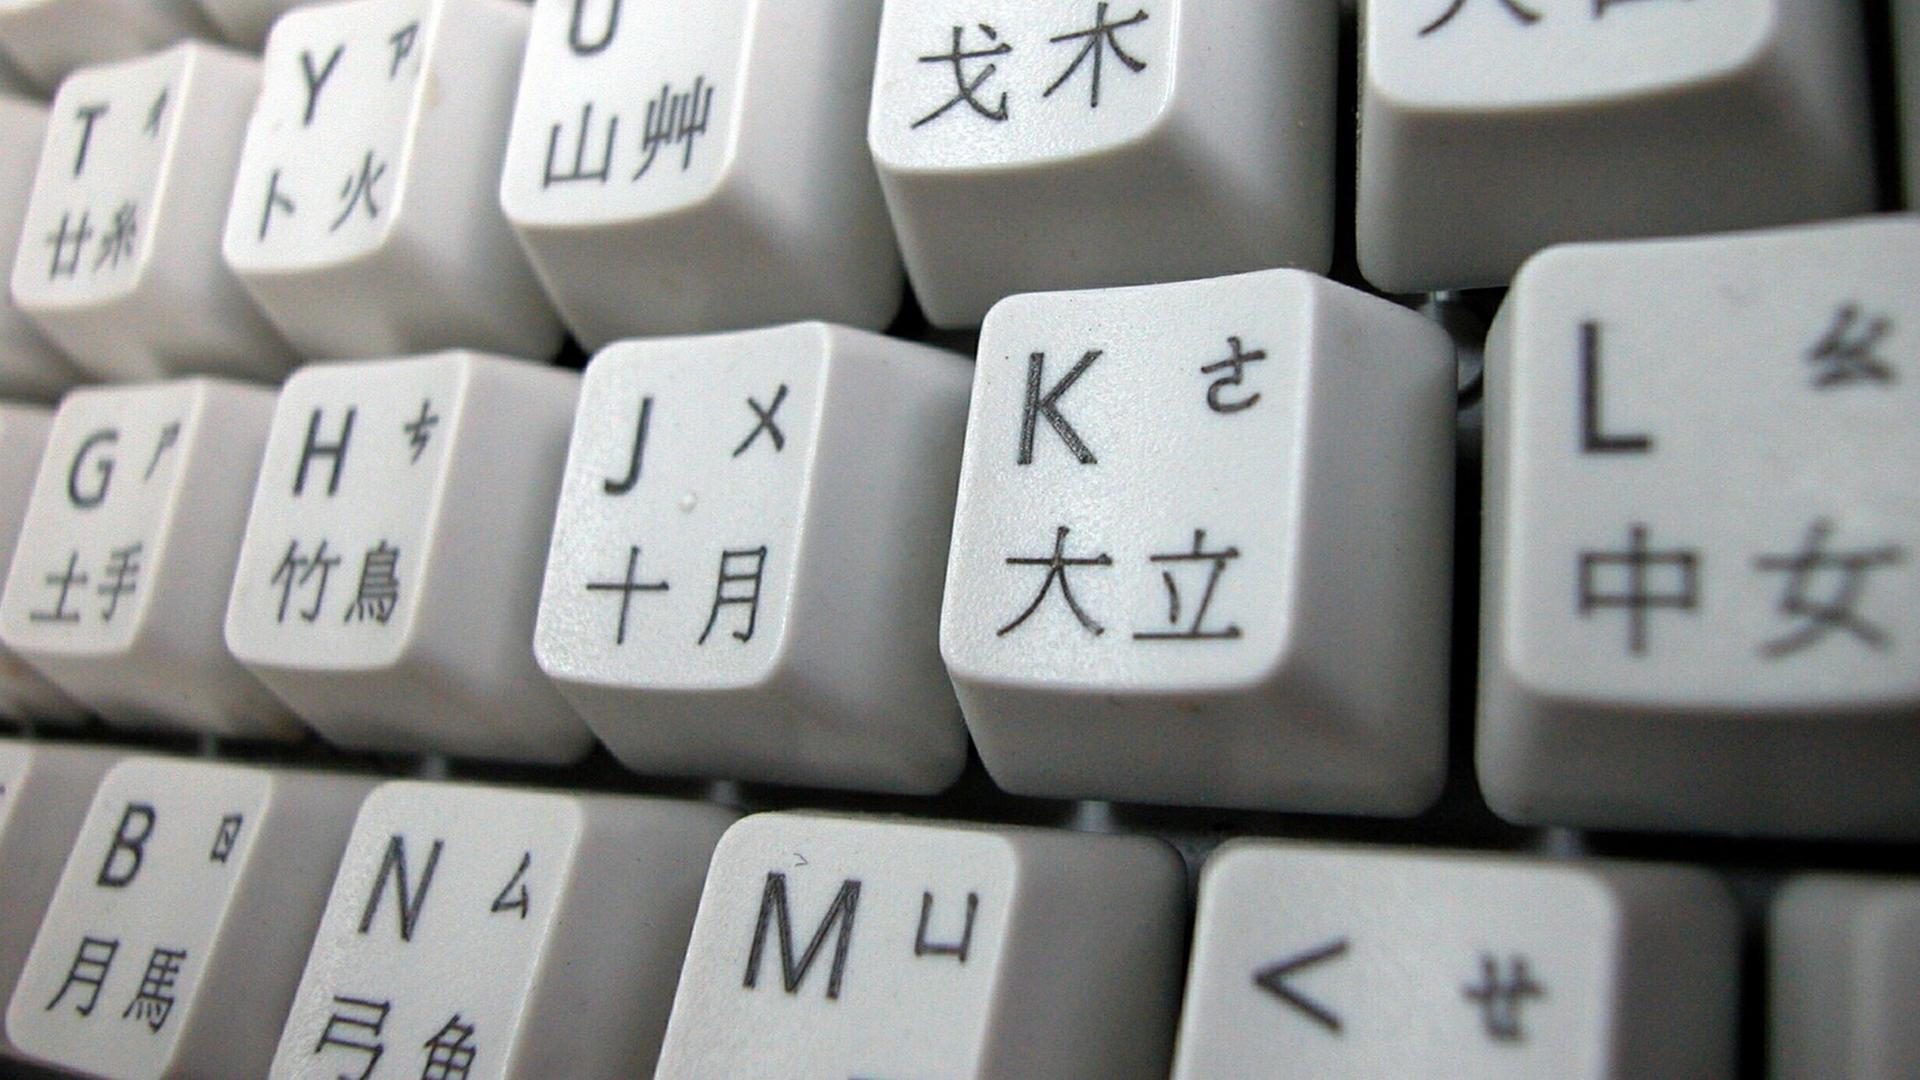 Печатать на китайском. Китайская клавиатура для компьютера с иероглифами. Китайская клавиатура пиньинь. Как выглядит клавиатура с китайскими иероглифами. Китайская клавиатура для компьютера с иероглифами как выглядит.